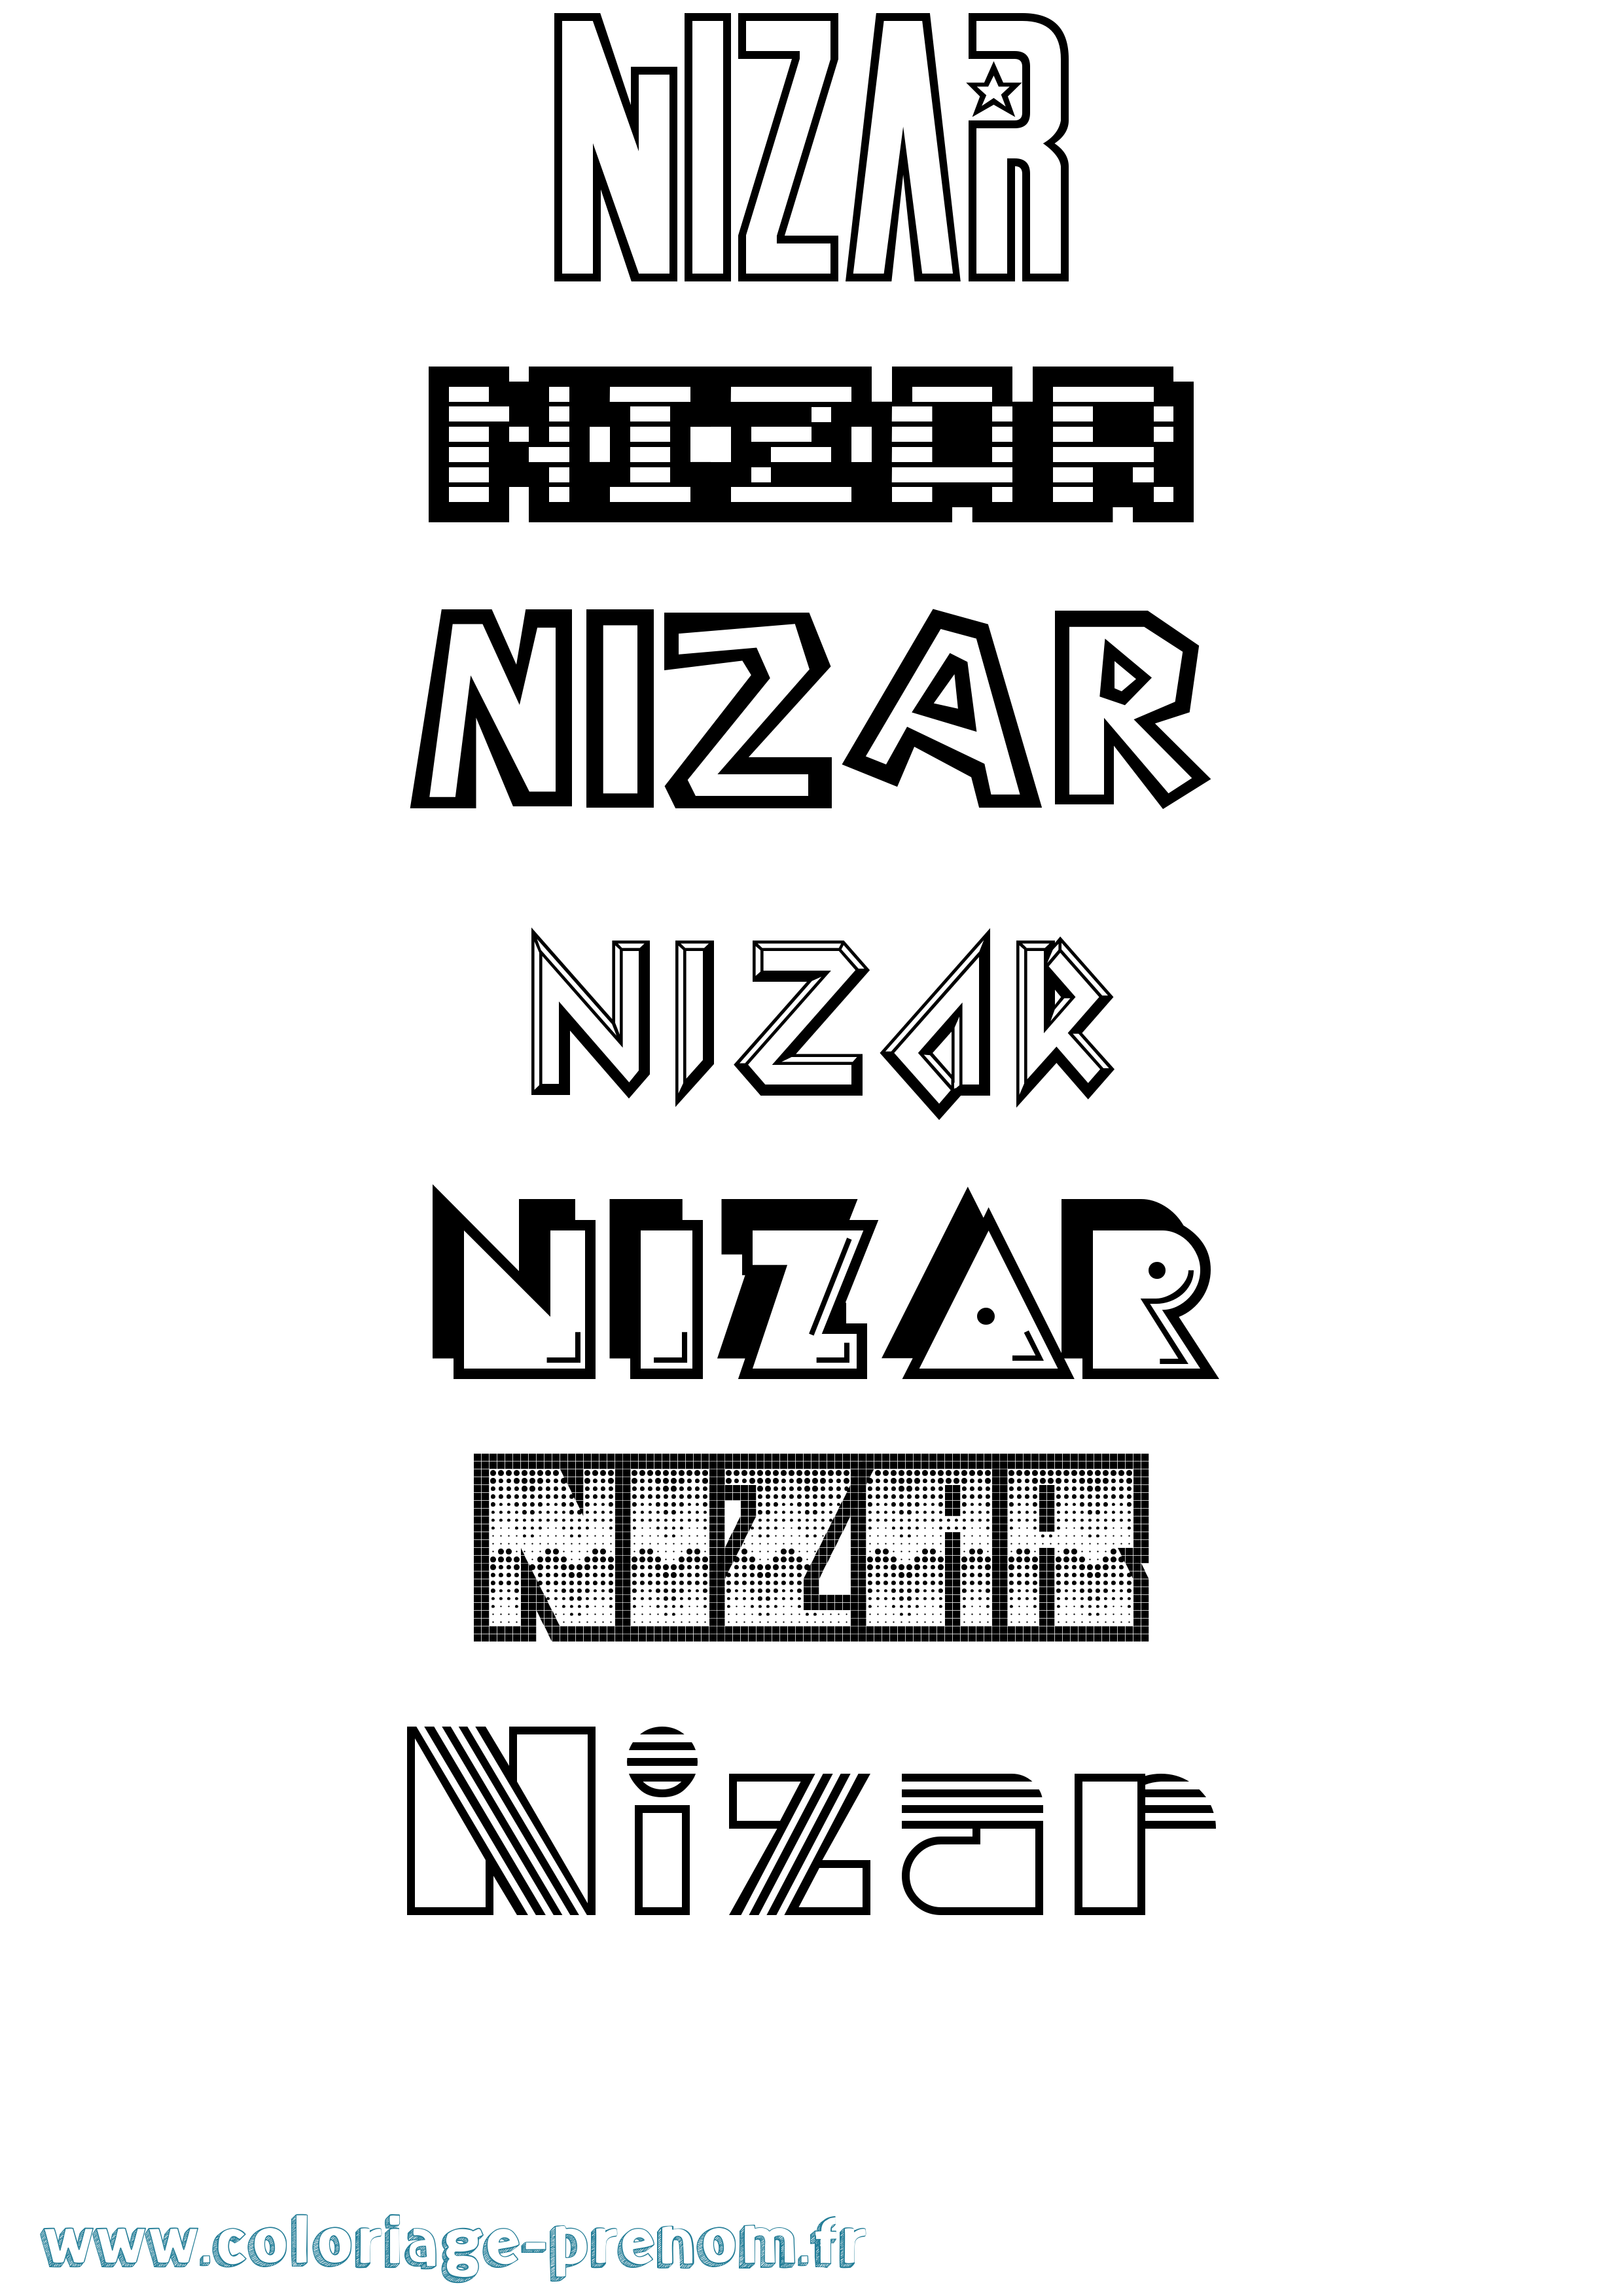 Coloriage prénom Nizar